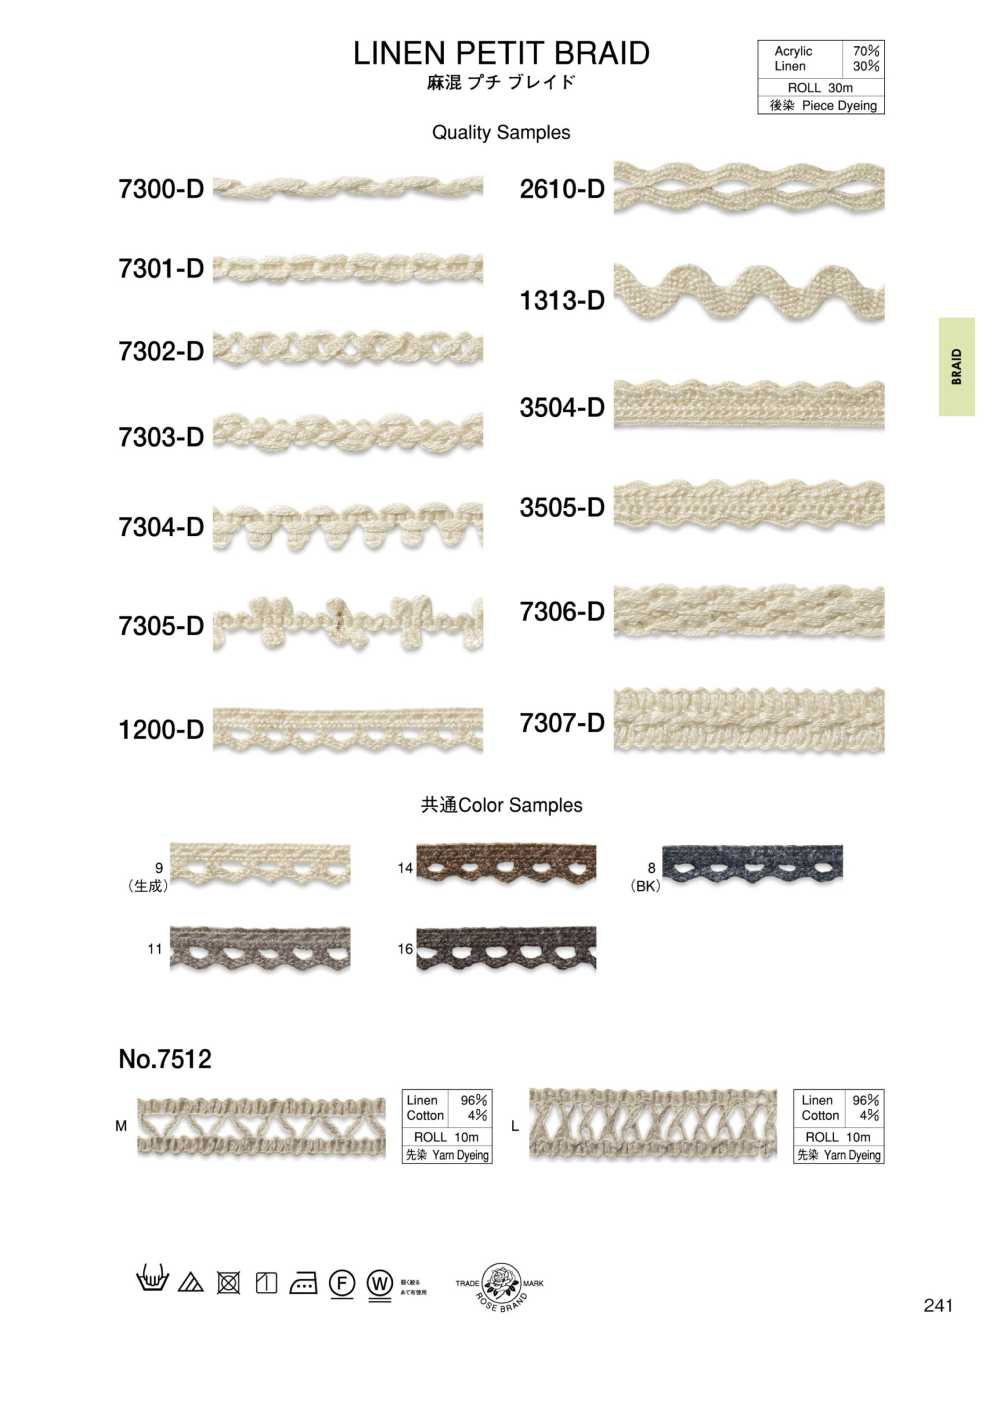 3505-D Linen Blend Petite Braid[Ribbon Tape Cord] ROSE BRAND (Marushin)